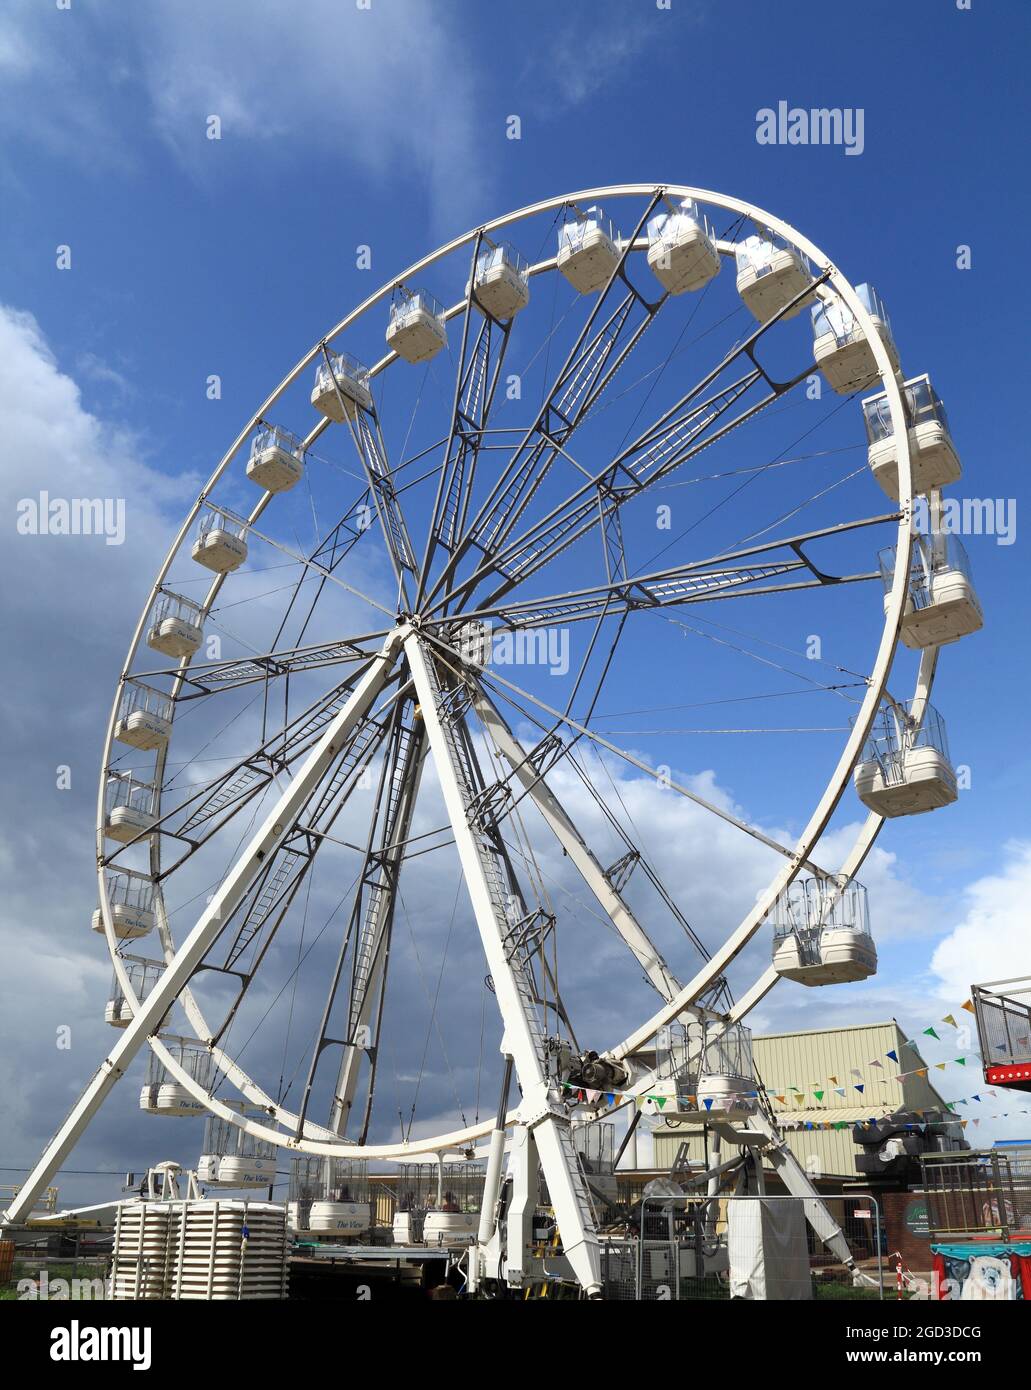 The View, Big Wheel, Hunstanton Eye, fairground, entertainment, Norfolk, England 2 Stock Photo